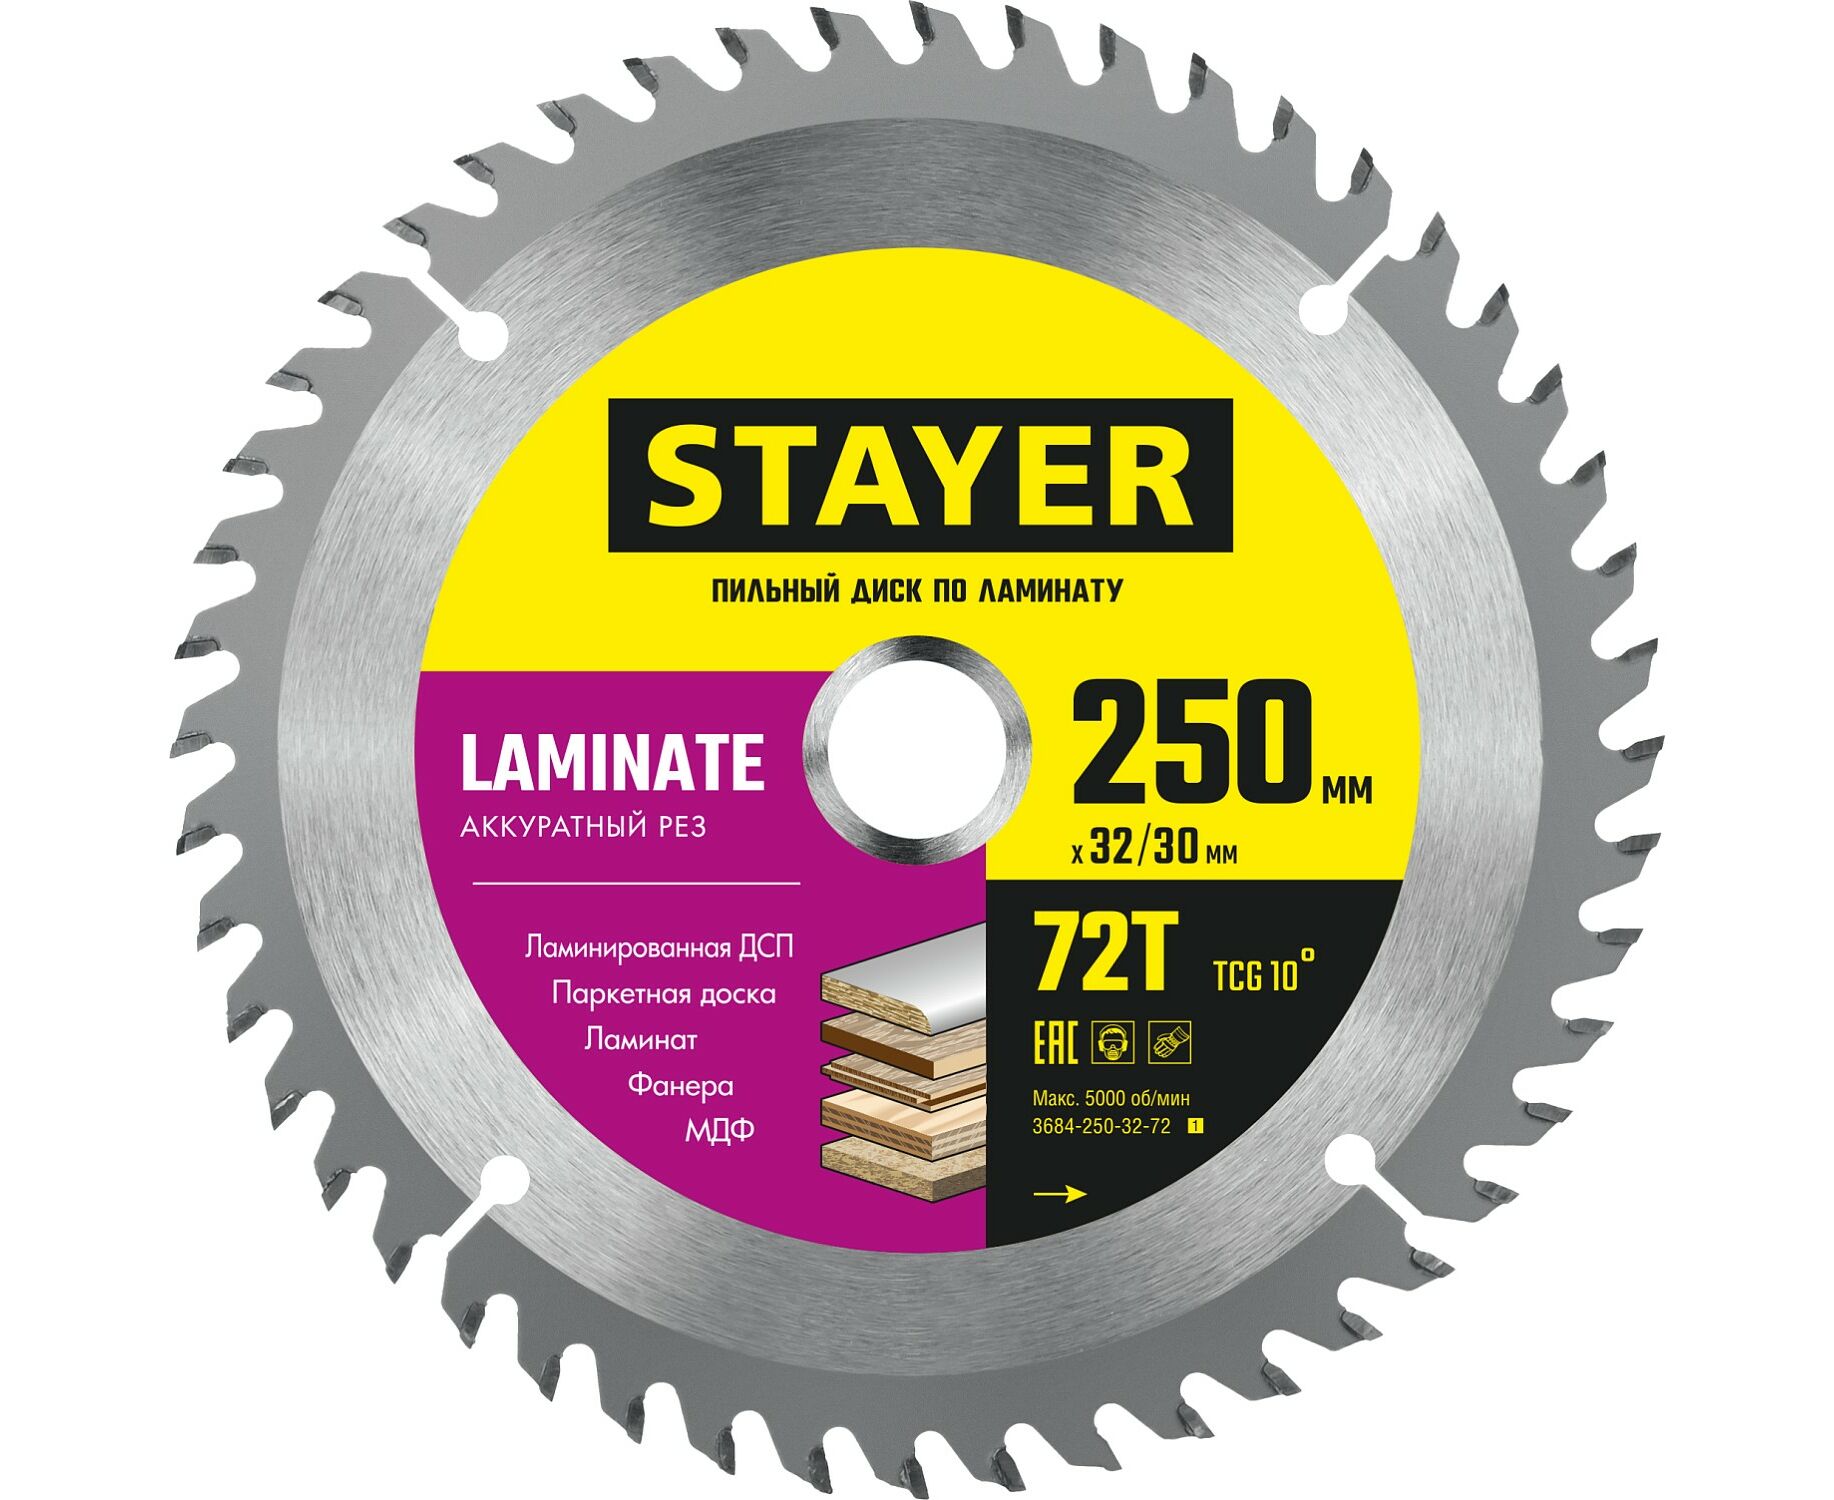 пильный диск stayer laminate 210 x 32 30мм 56т по ламинату аккуратный рез Пильный диск STAYER LAMINATE 250 x 32/30мм 72Т, по ламинату, аккуратный рез